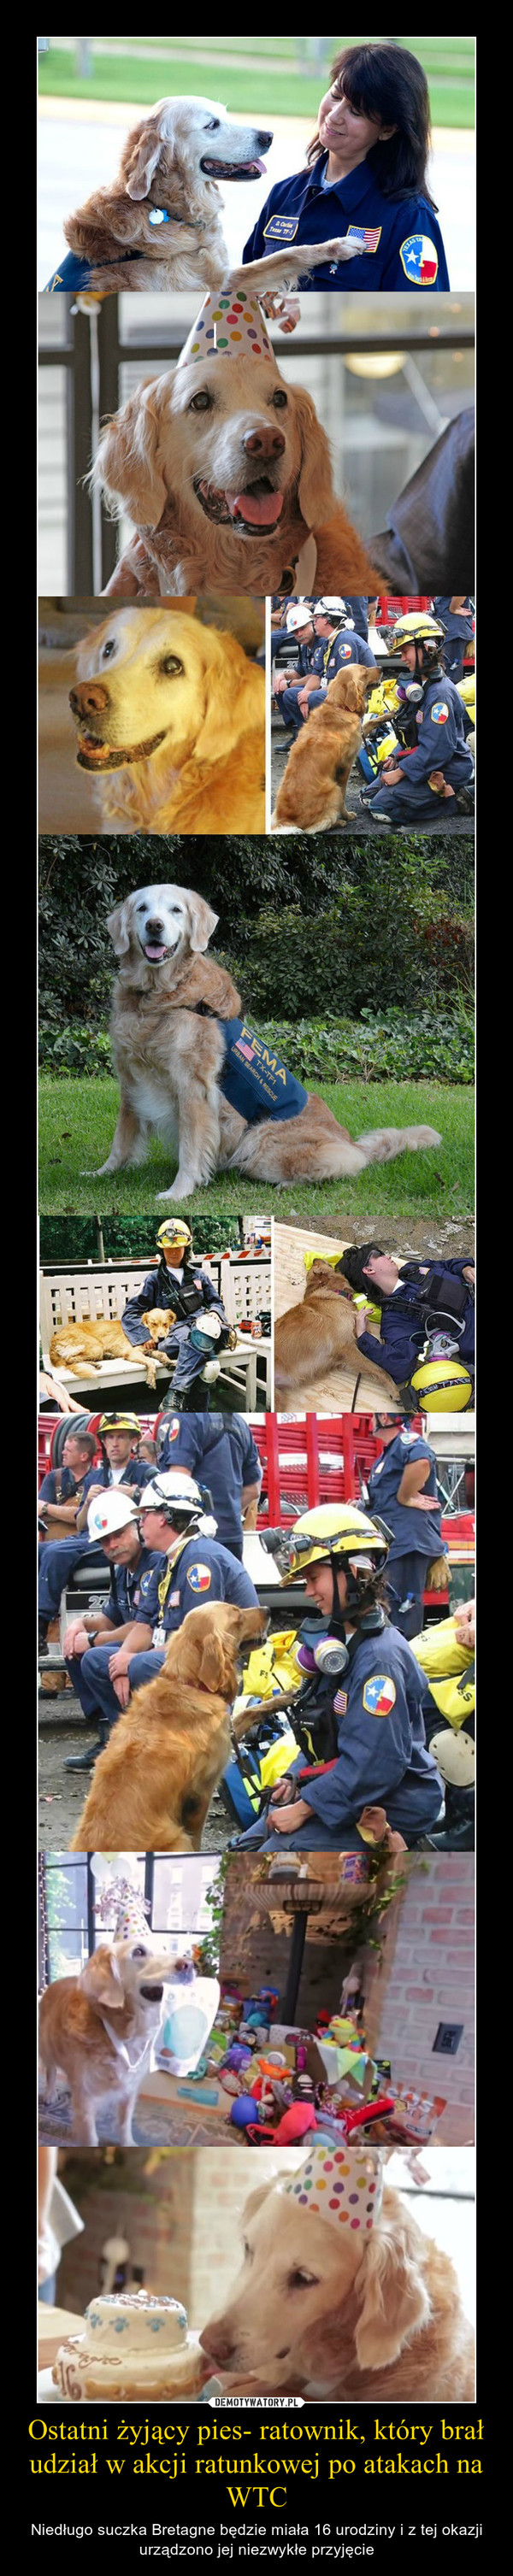 Ostatni żyjący pies- ratownik, który brał udział w akcji ratunkowej po atakach na WTC – Niedługo suczka Bretagne będzie miała 16 urodziny i z tej okazji urządzono jej niezwykłe przyjęcie 